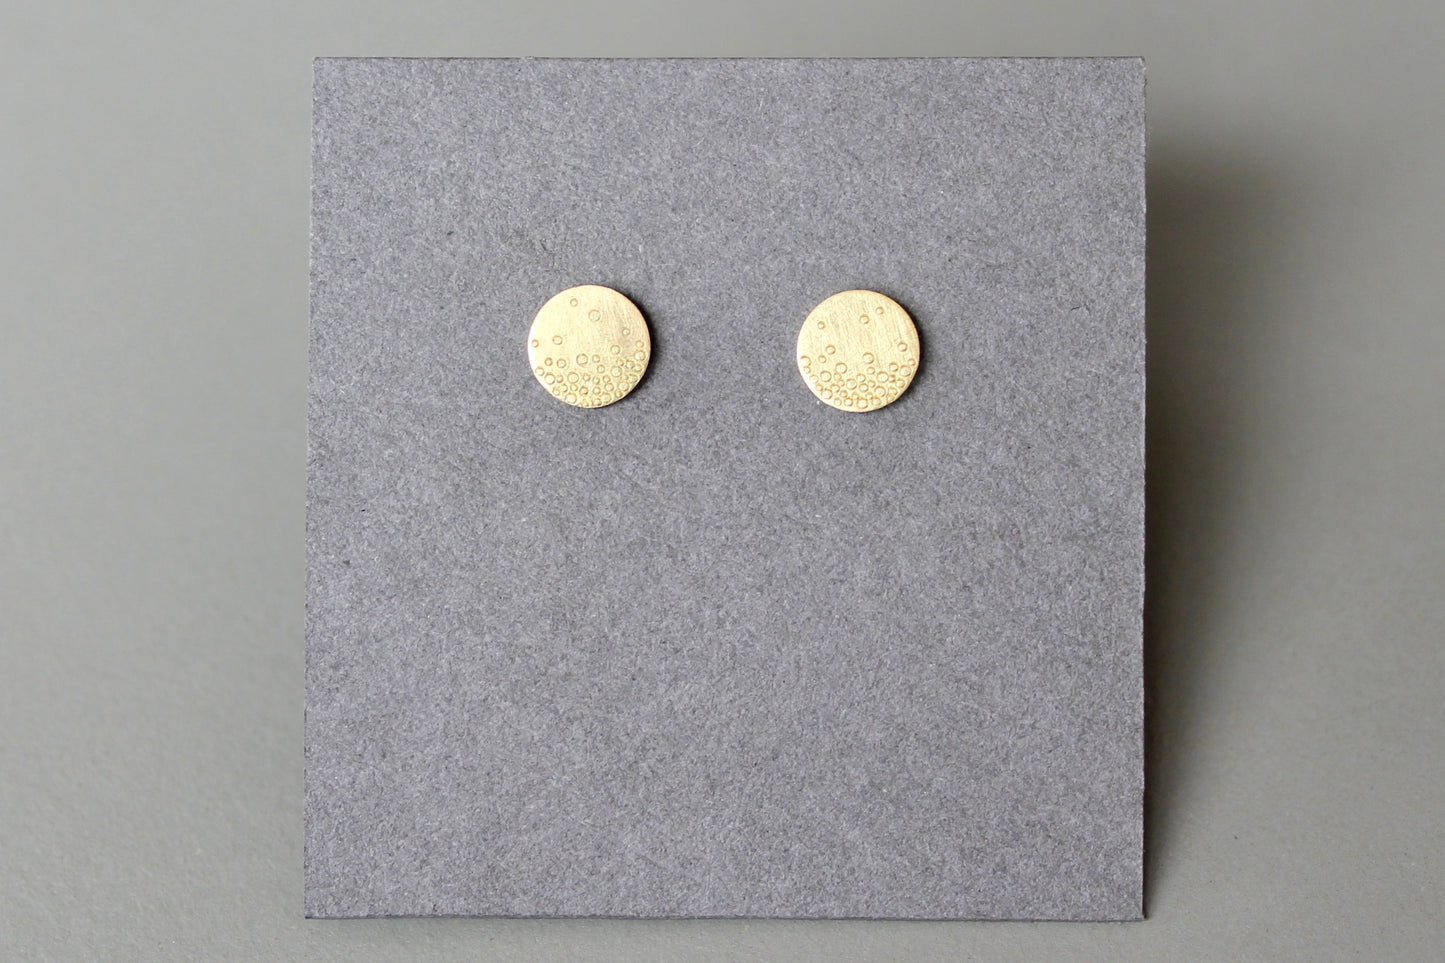 minimalistische Ohrstecker aus 750er Gold mit Bubbles Design